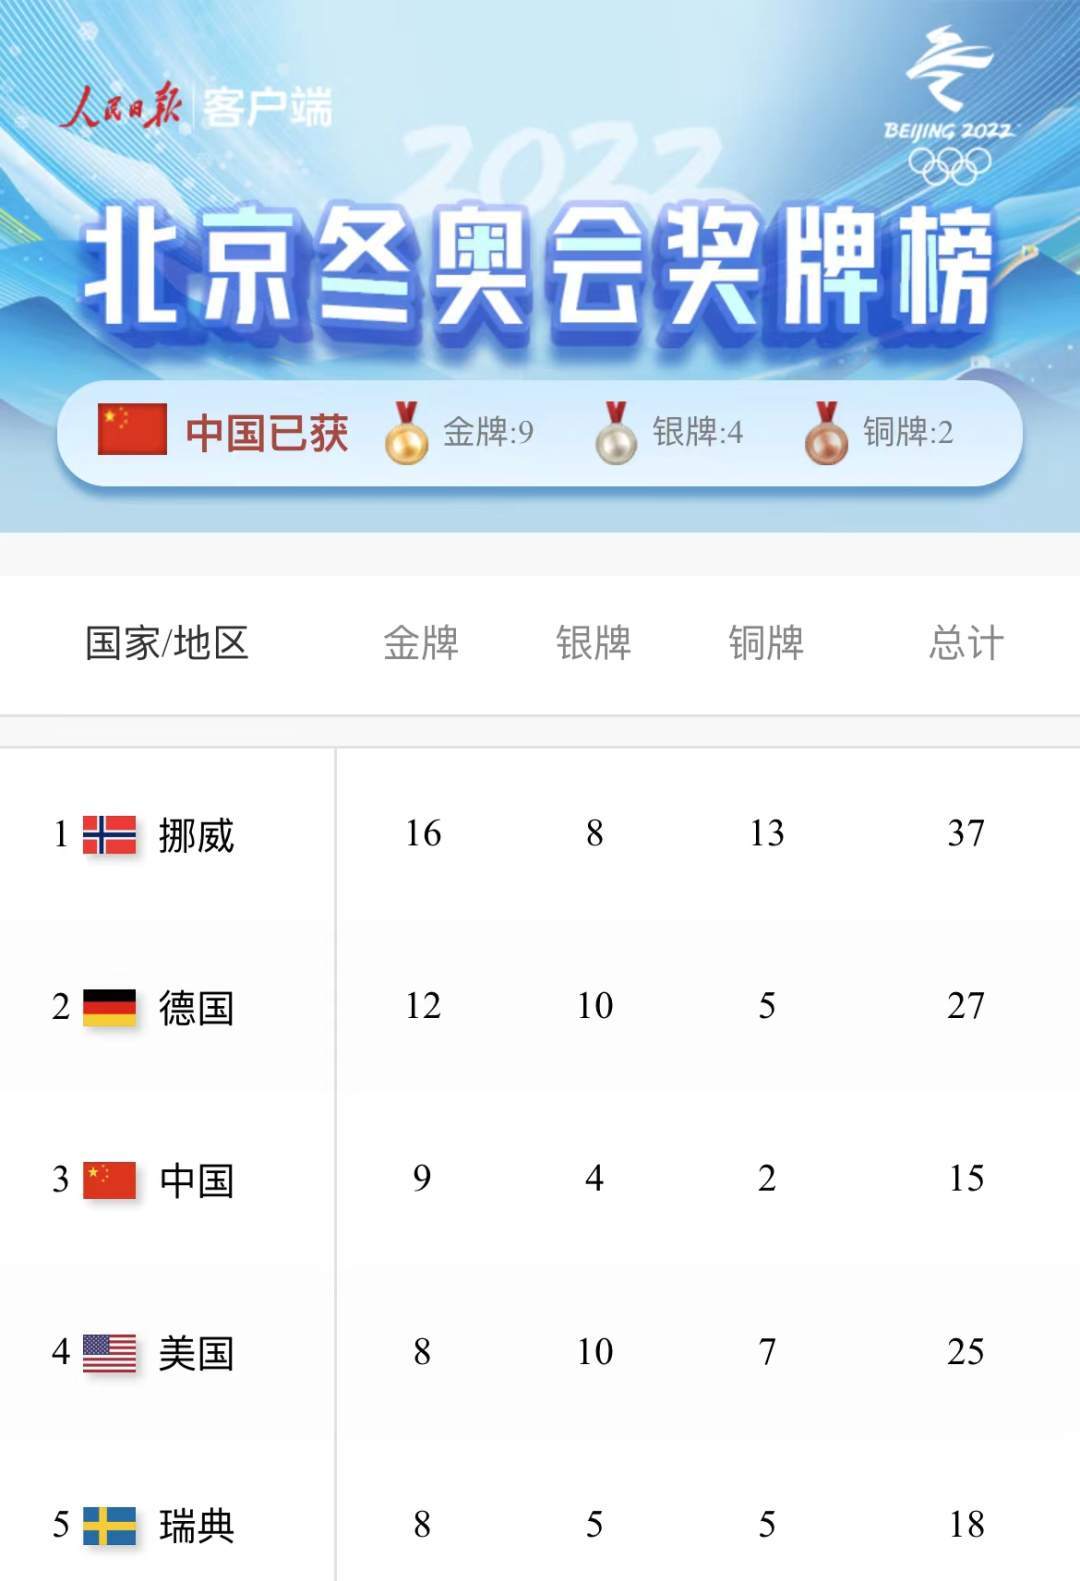 赛事收官！中国队9金4银2铜收官位列奖牌榜第三